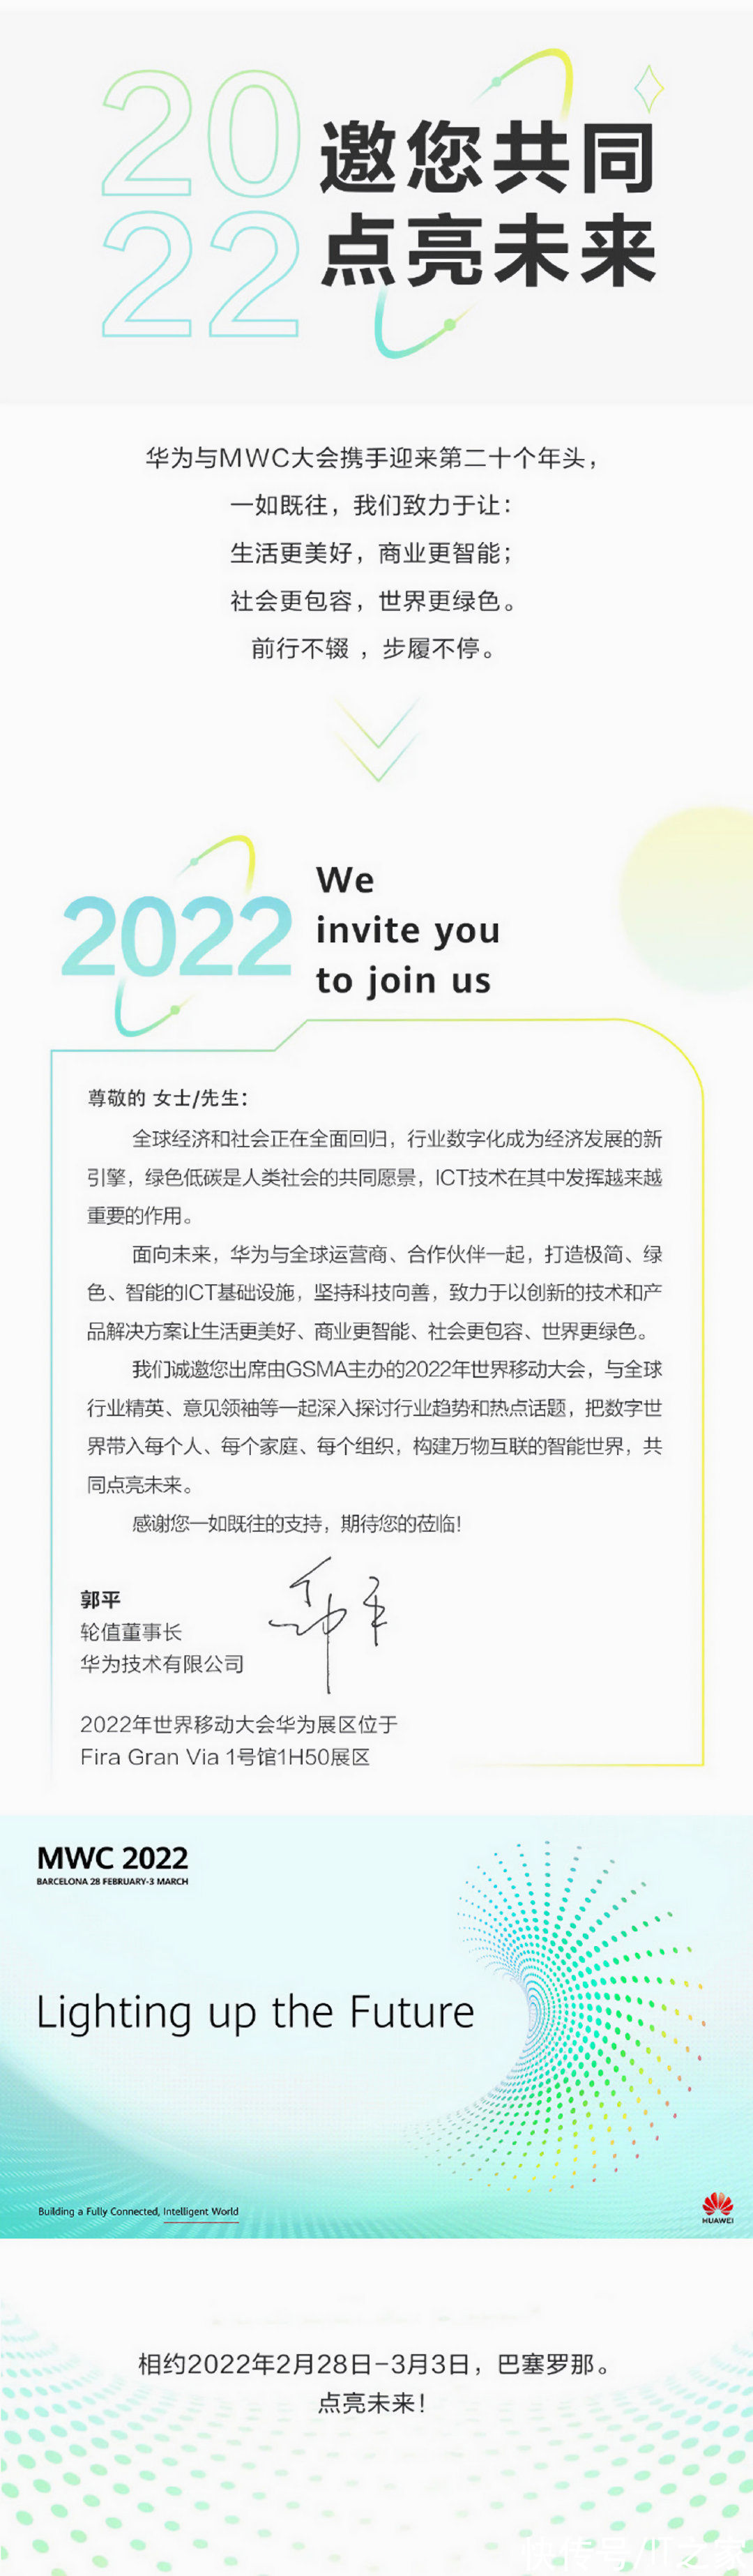 MWC|华为确认参展 MWC 2022 世界移动通信大会，2 月 28 日召开